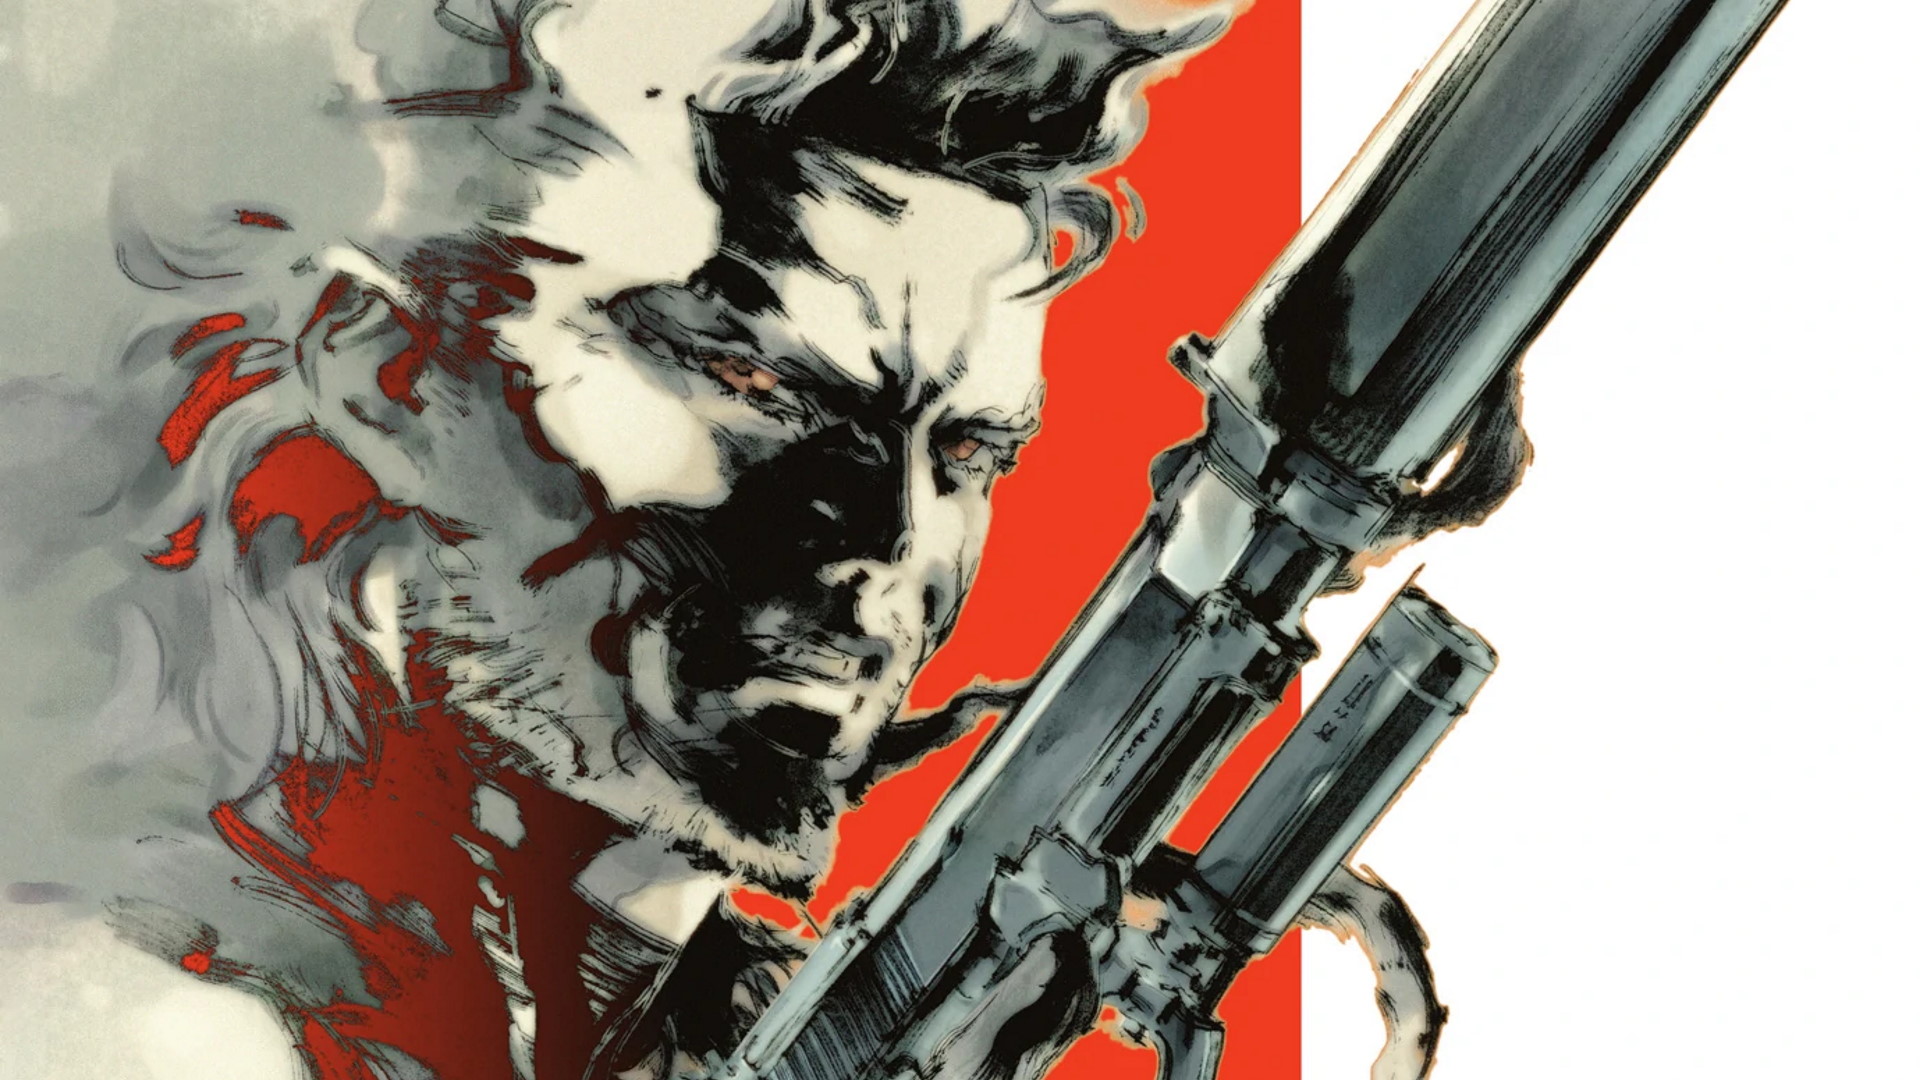 Hideo Kojima, Metal Gear Solid 2'nin 300 değişiklik yapması gerektiğini ve 11 Eylül terör saldırılarının ardından neredeyse iptal edildiğini söyledi